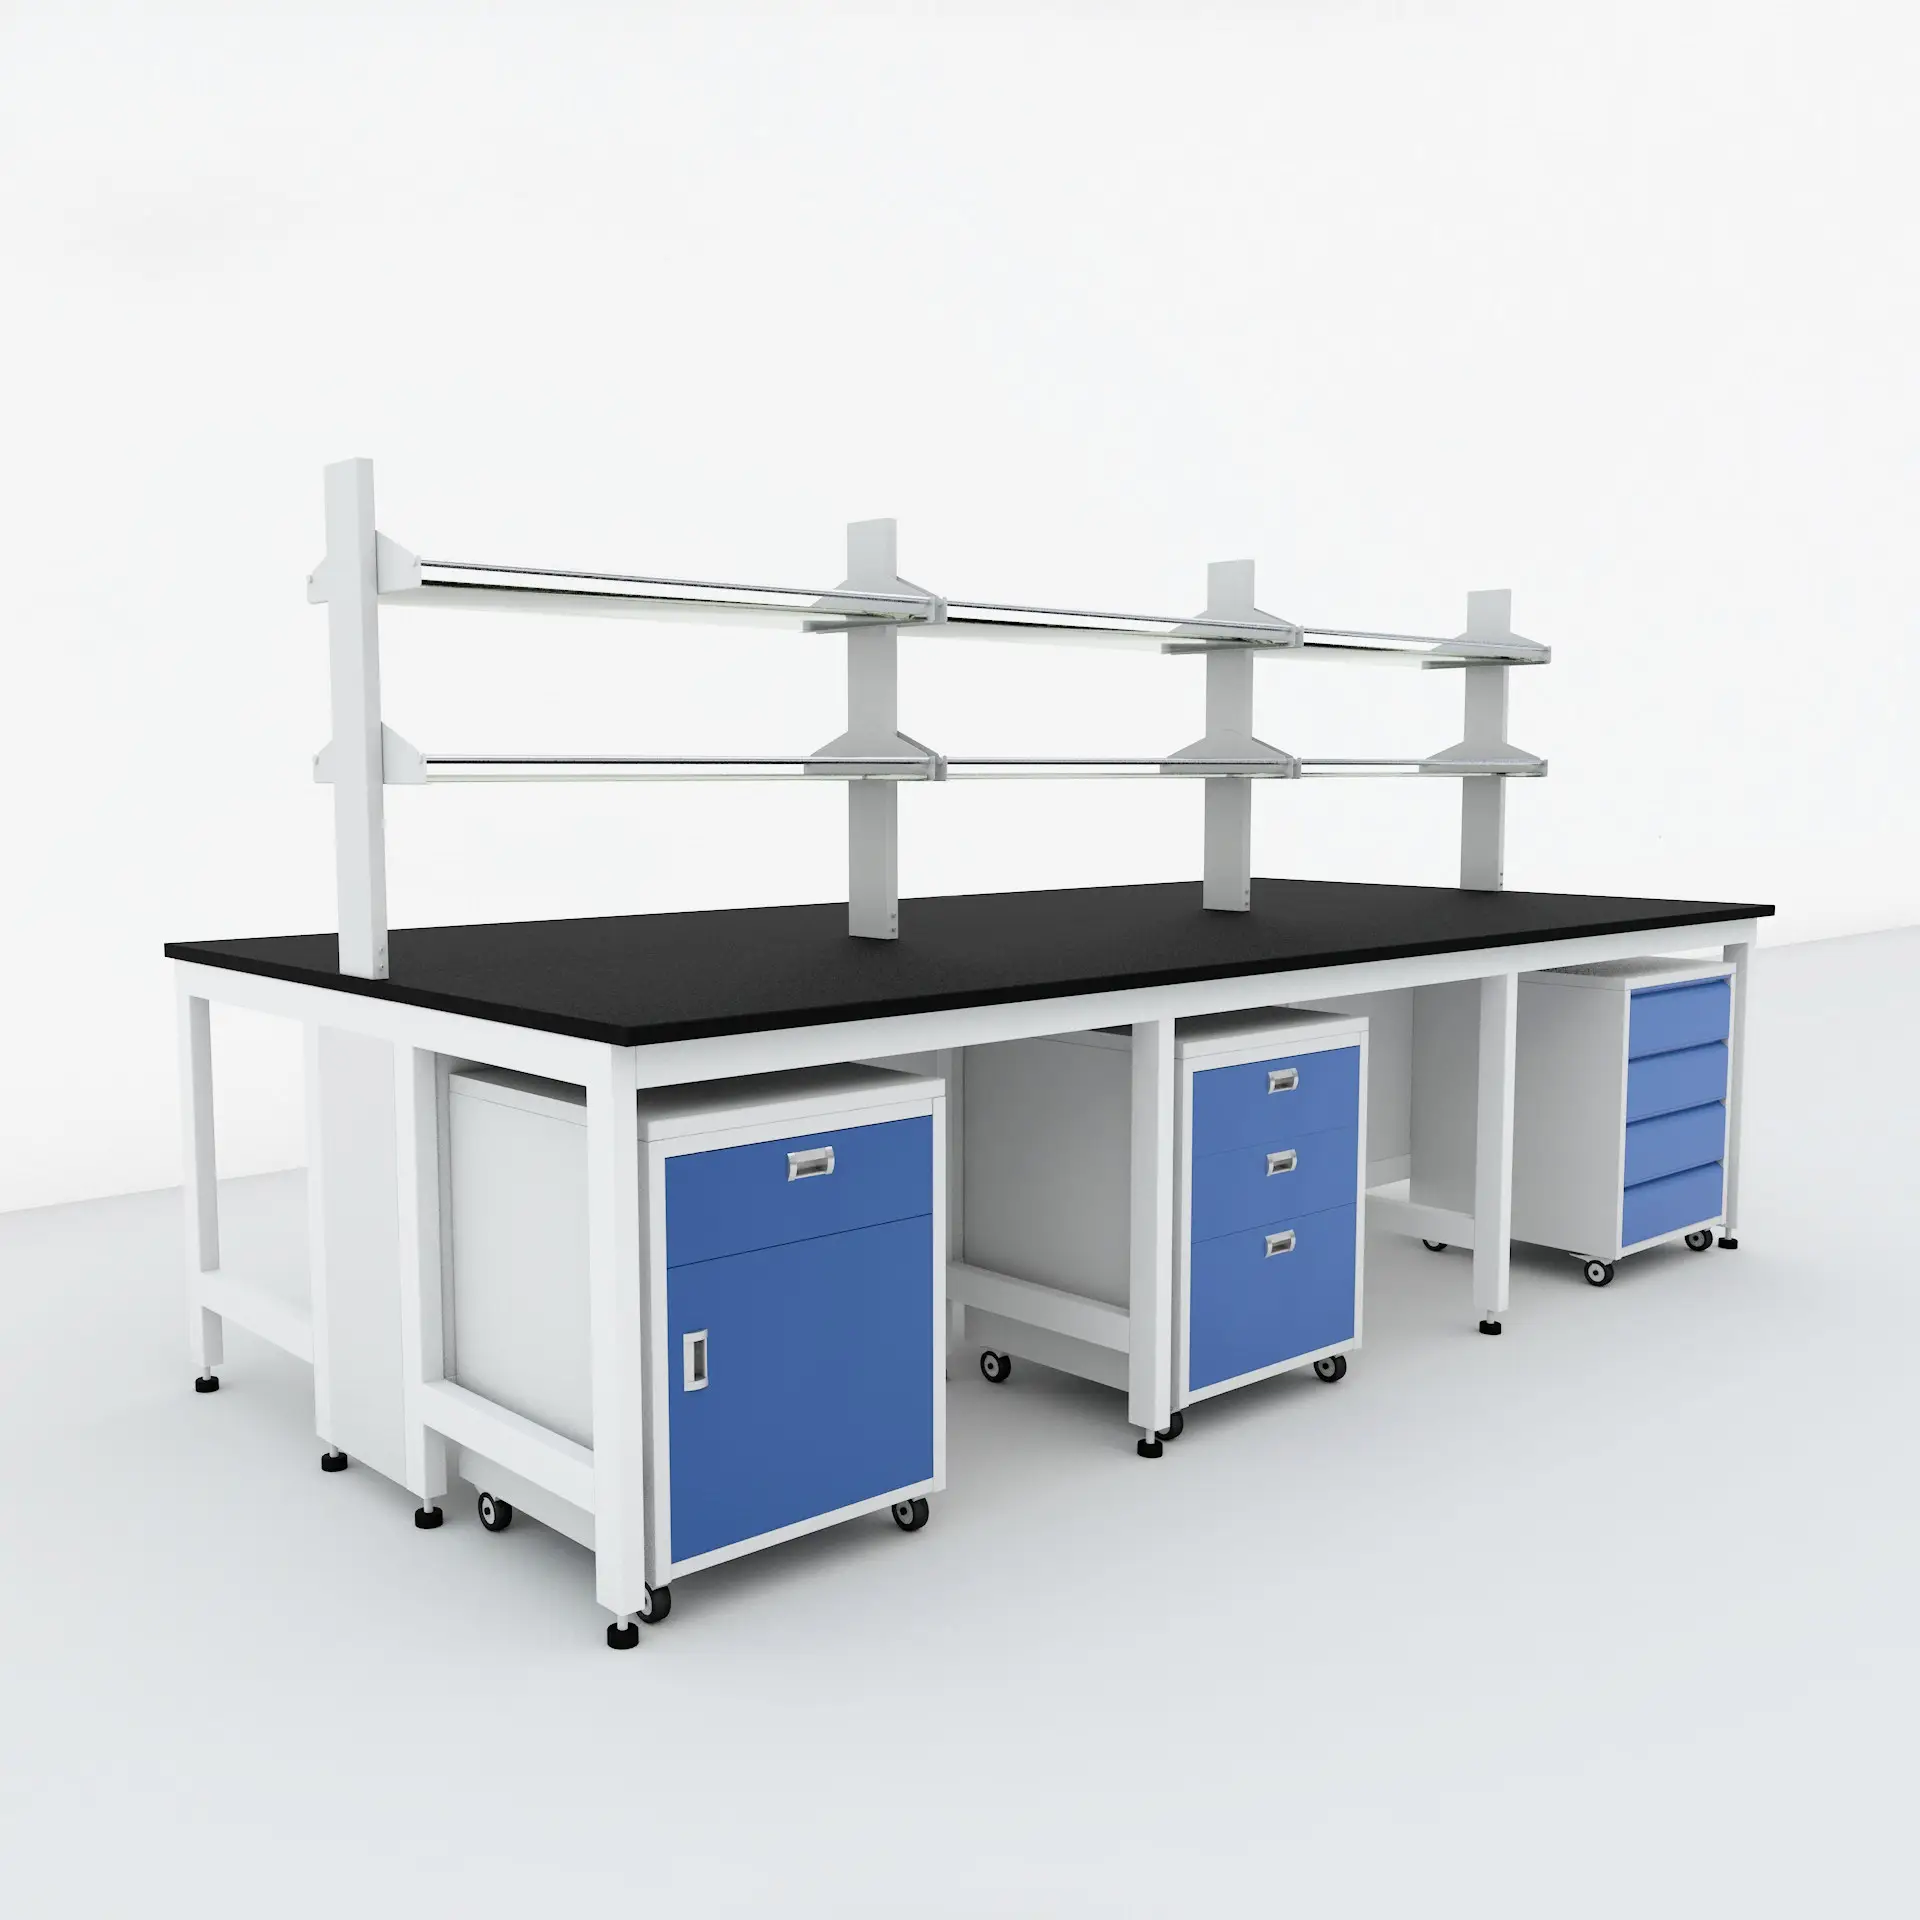 Banco de trabajo de laboratorio Modular, banco de trabajo de 10 pies, laboratorio Flexible usado, puede personalizarse y diseñada especialmente